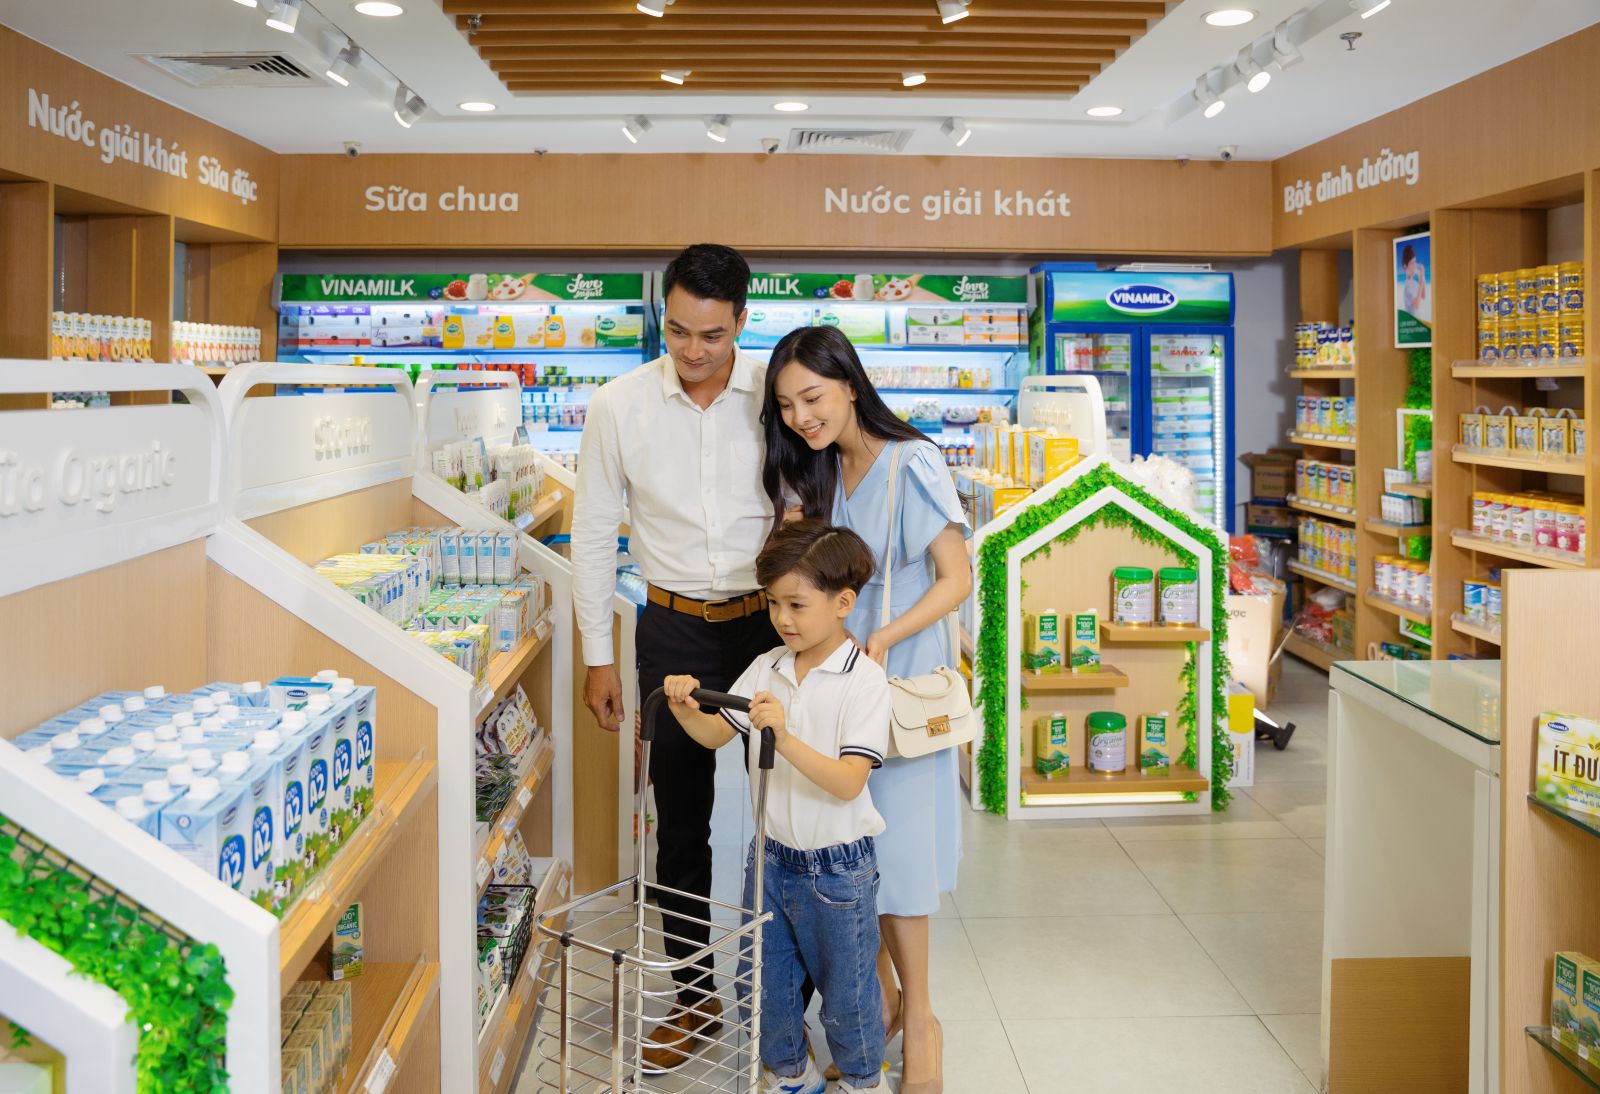 Vinamilk là thương hiệu được người tiêu dùng Việt Nam chọn mua nhiều nhất trong nhiều năm liền  Hình 4: Hệ thống năng lượng mặt trời là dấu chân xanh nổi bật trong việc sử dụng năng lượng tái tạo vào hoạt động sản xuất kinh doanh của Vinamilk